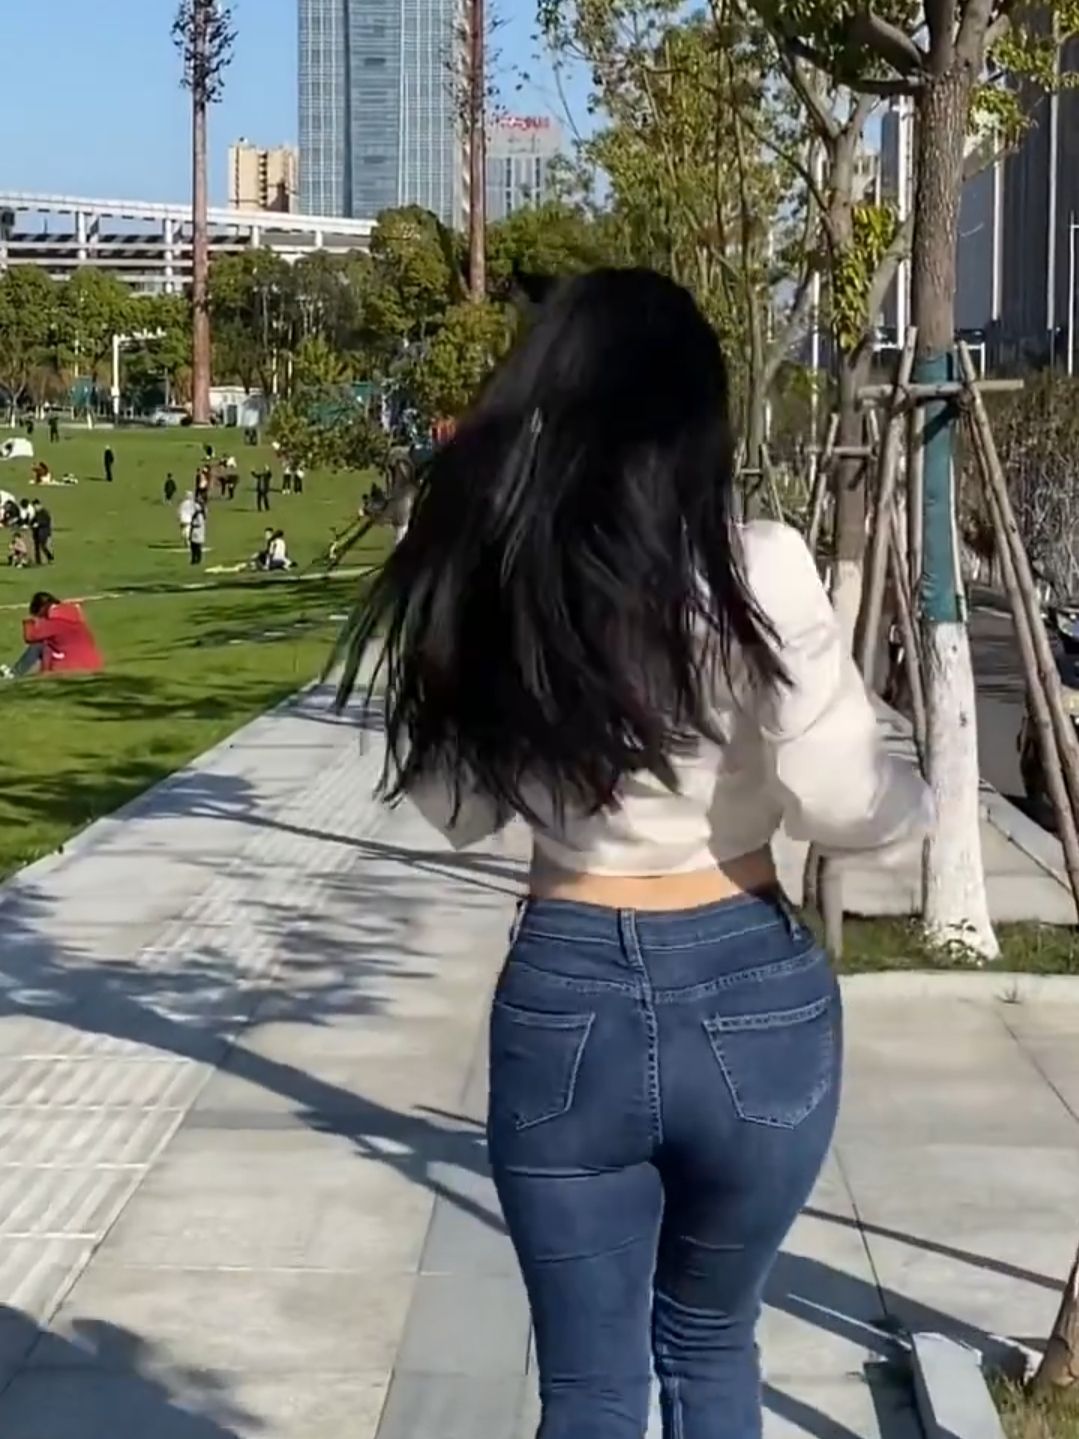 [视频]行走中的牛仔裤美女